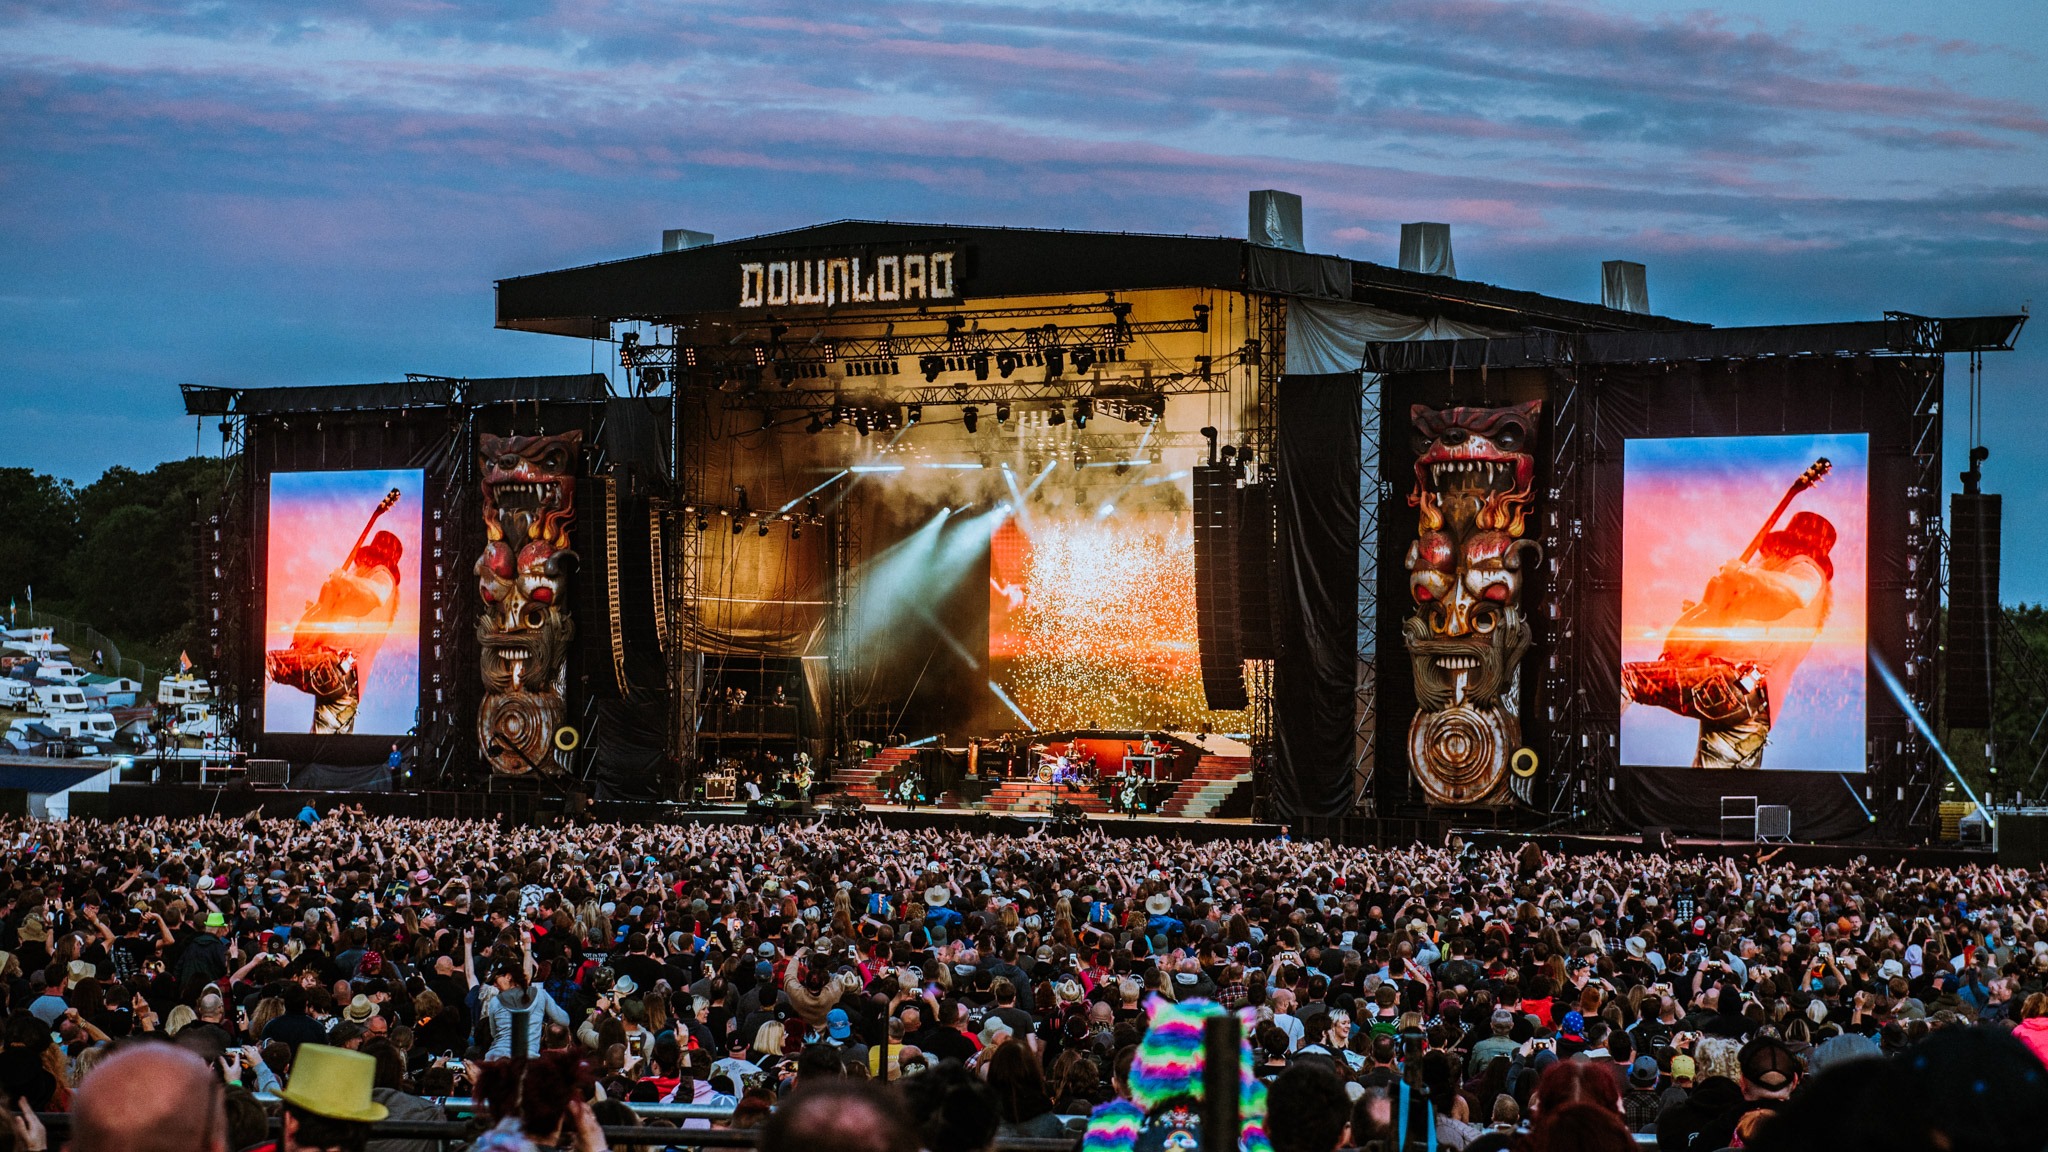 Donwload festival confirma grupos y distribución por días para el 2021